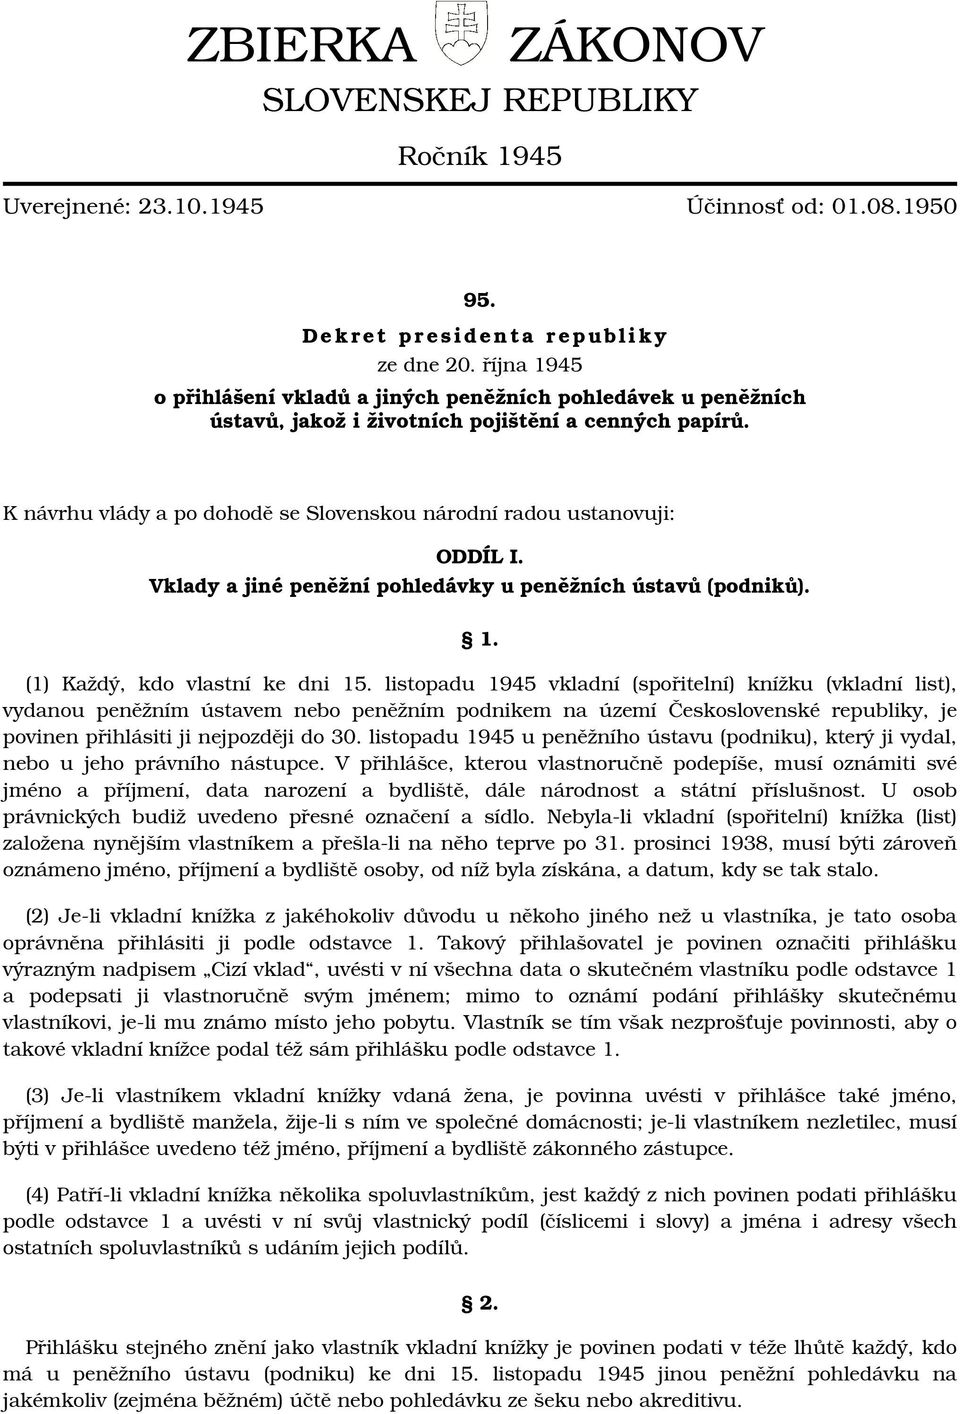 K návrhu vlády a po dohodě se Slovenskou národní radou ustanovuji: ODDÍL I. Vklady a jiné peněžní pohledávky u peněžních ústavů (podniků). 1. (1) Každý, kdo vlastní ke dni 15.